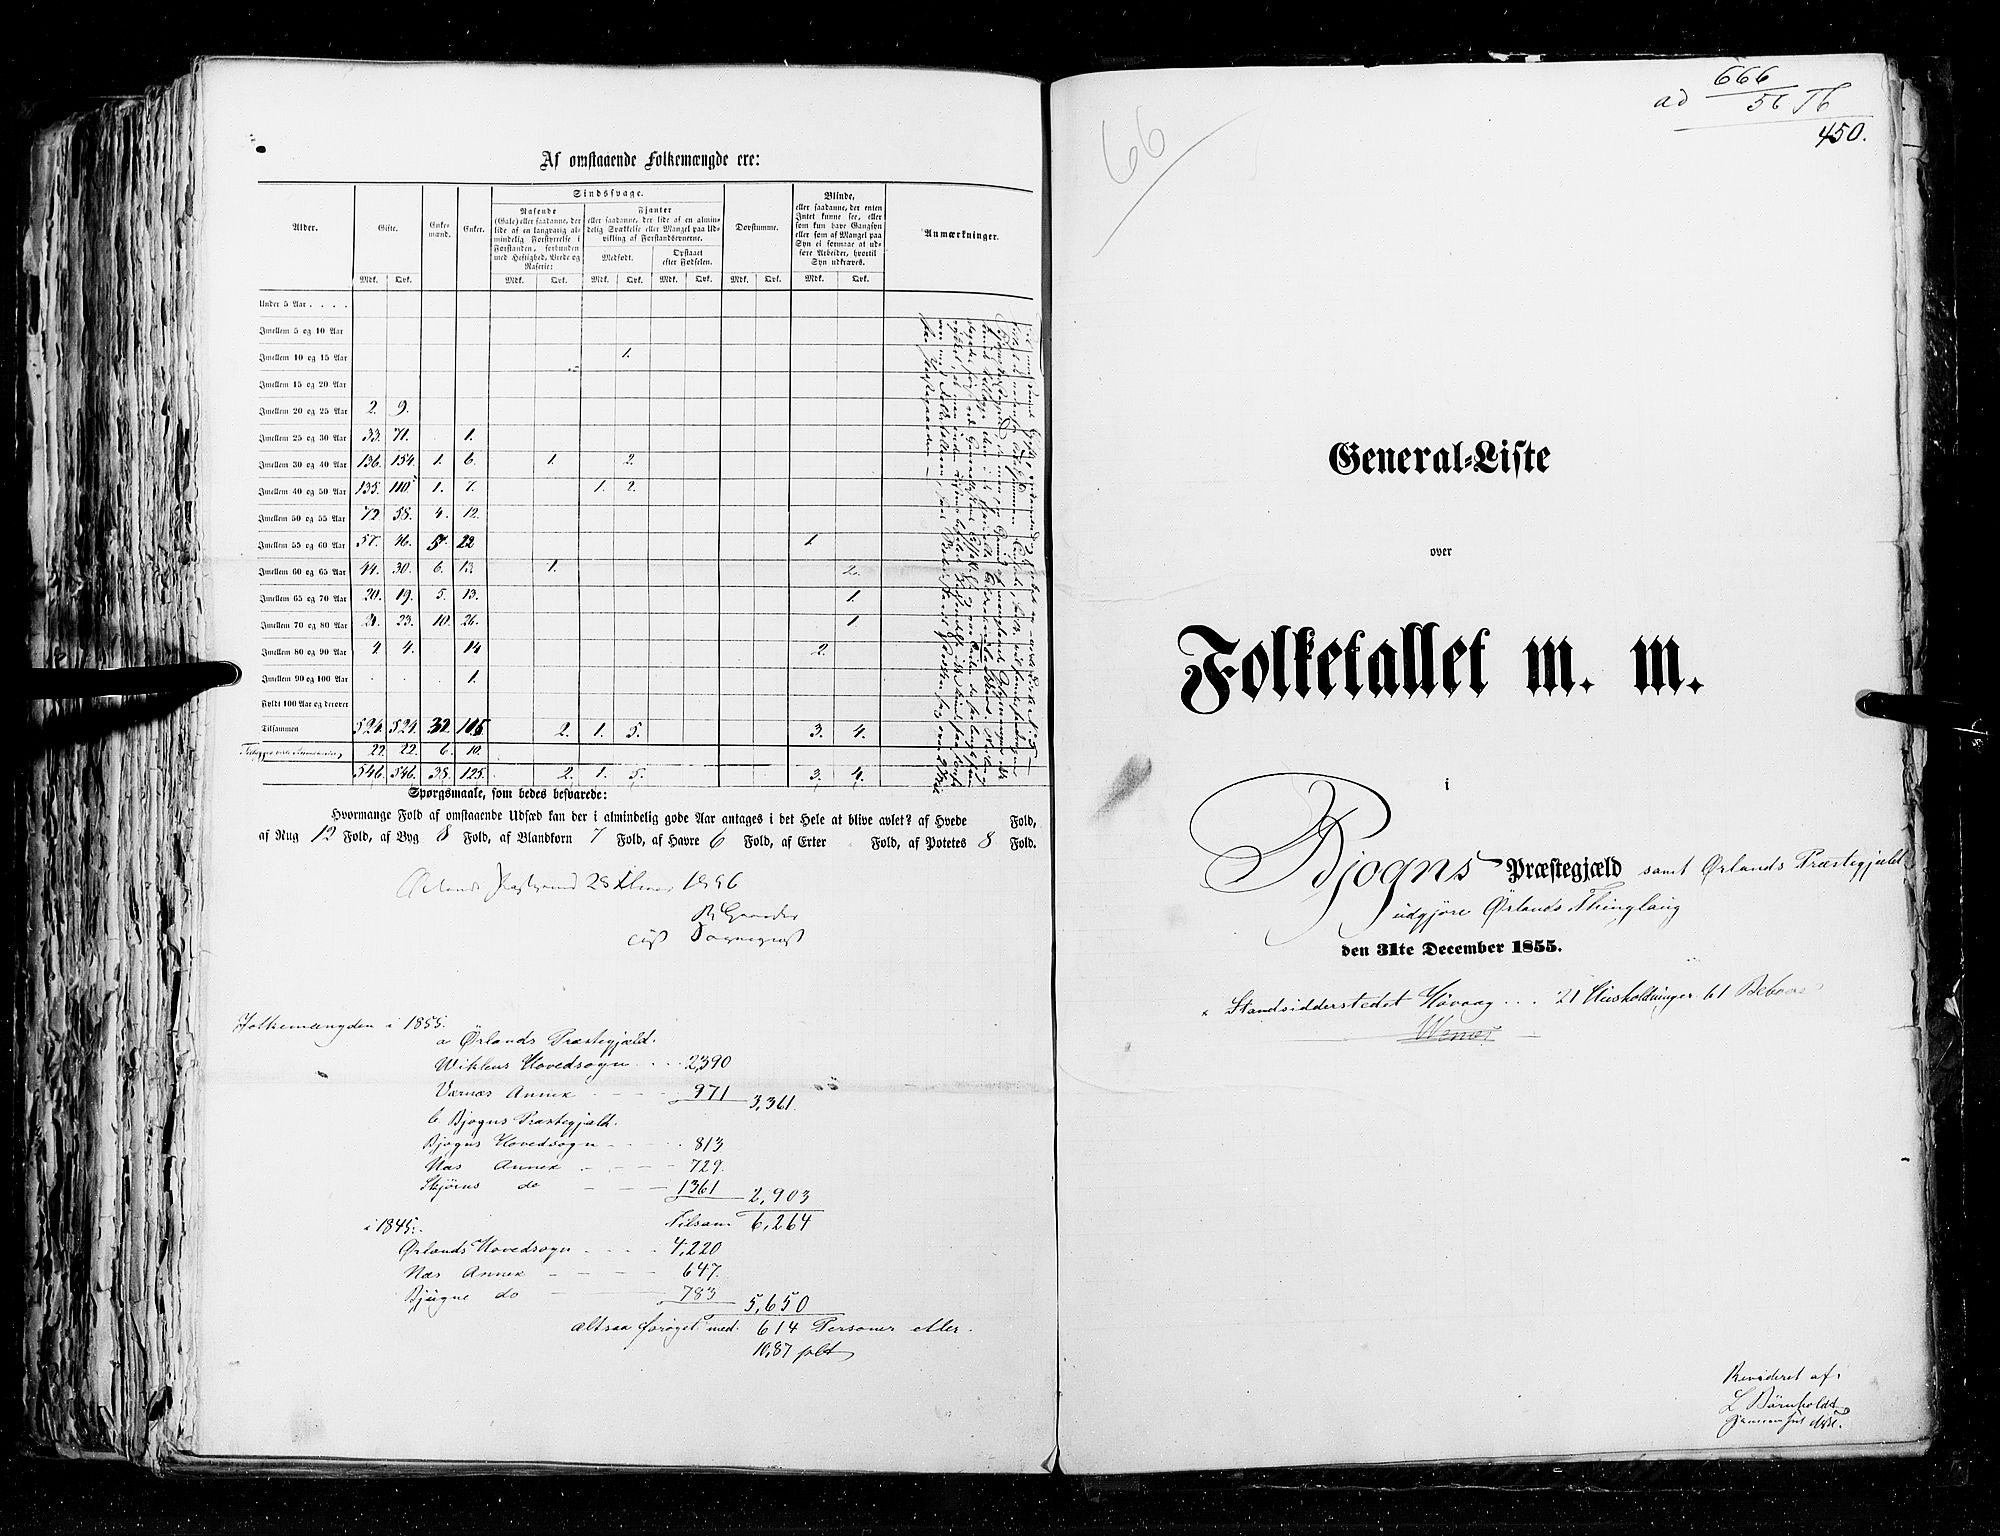 RA, Folketellingen 1855, bind 5: Nordre Bergenhus amt, Romsdal amt og Søndre Trondhjem amt, 1855, s. 450